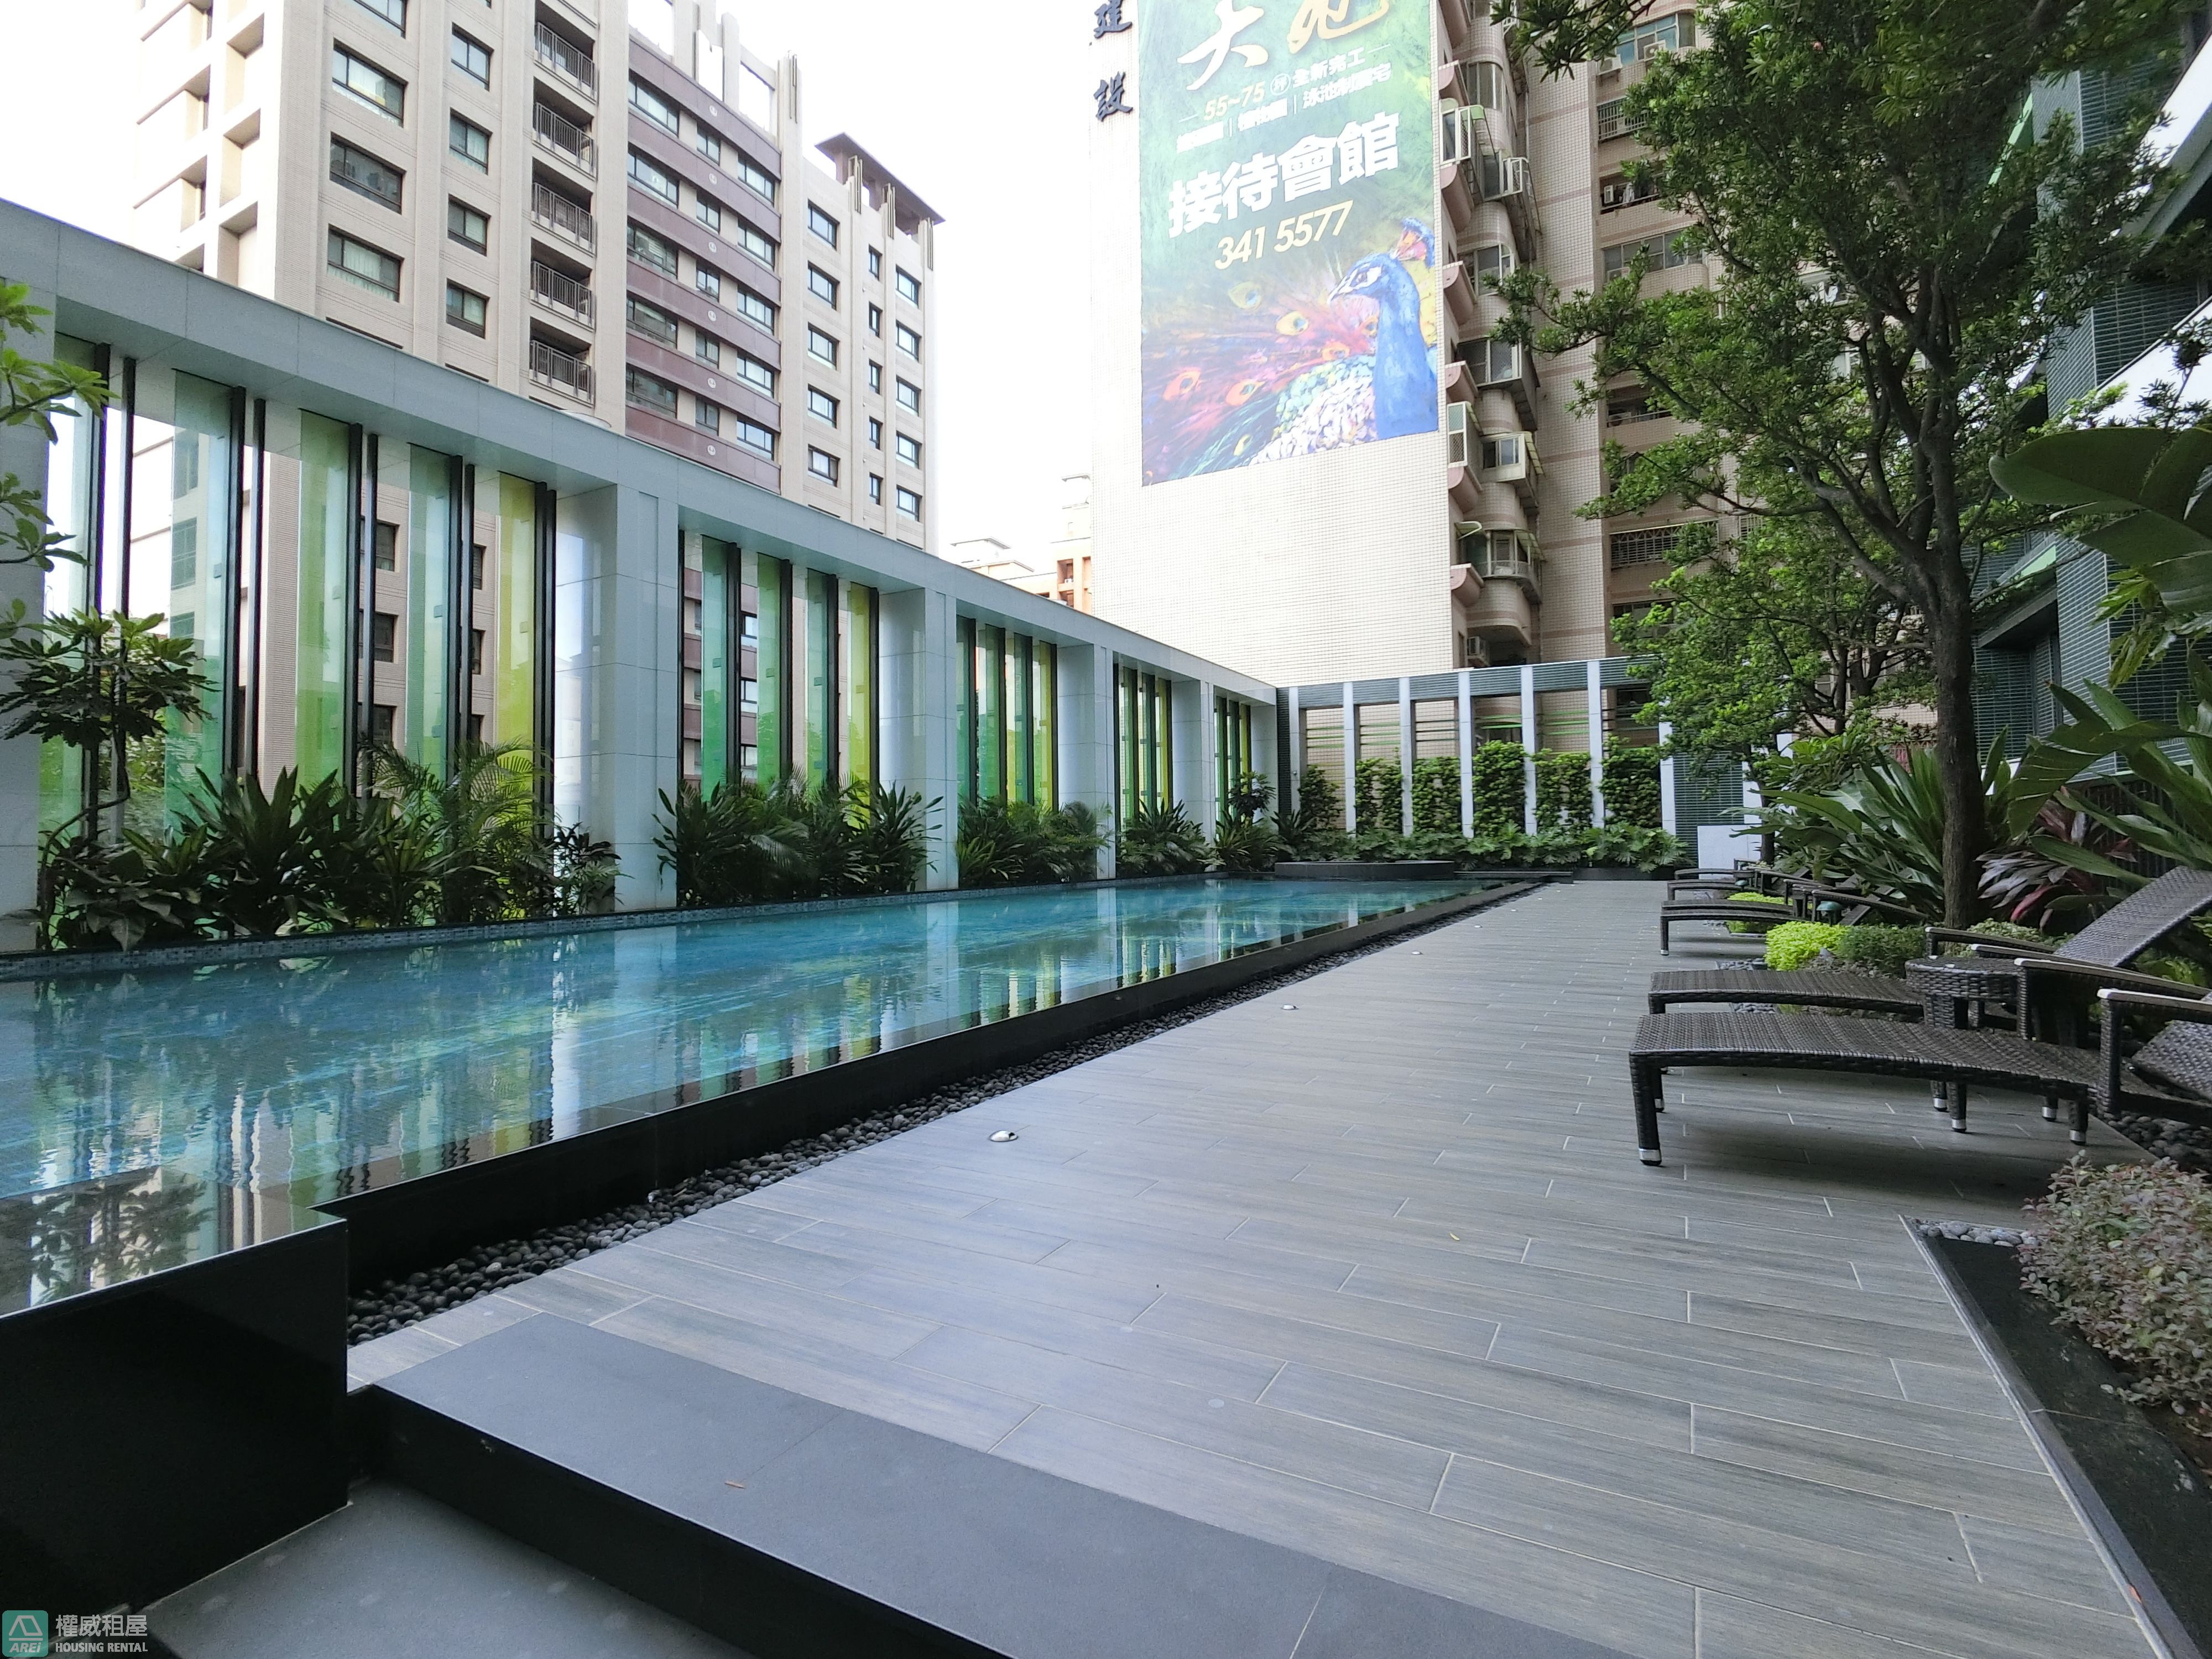 生態園區R15京城大苑高樓典雅3+1房泳池